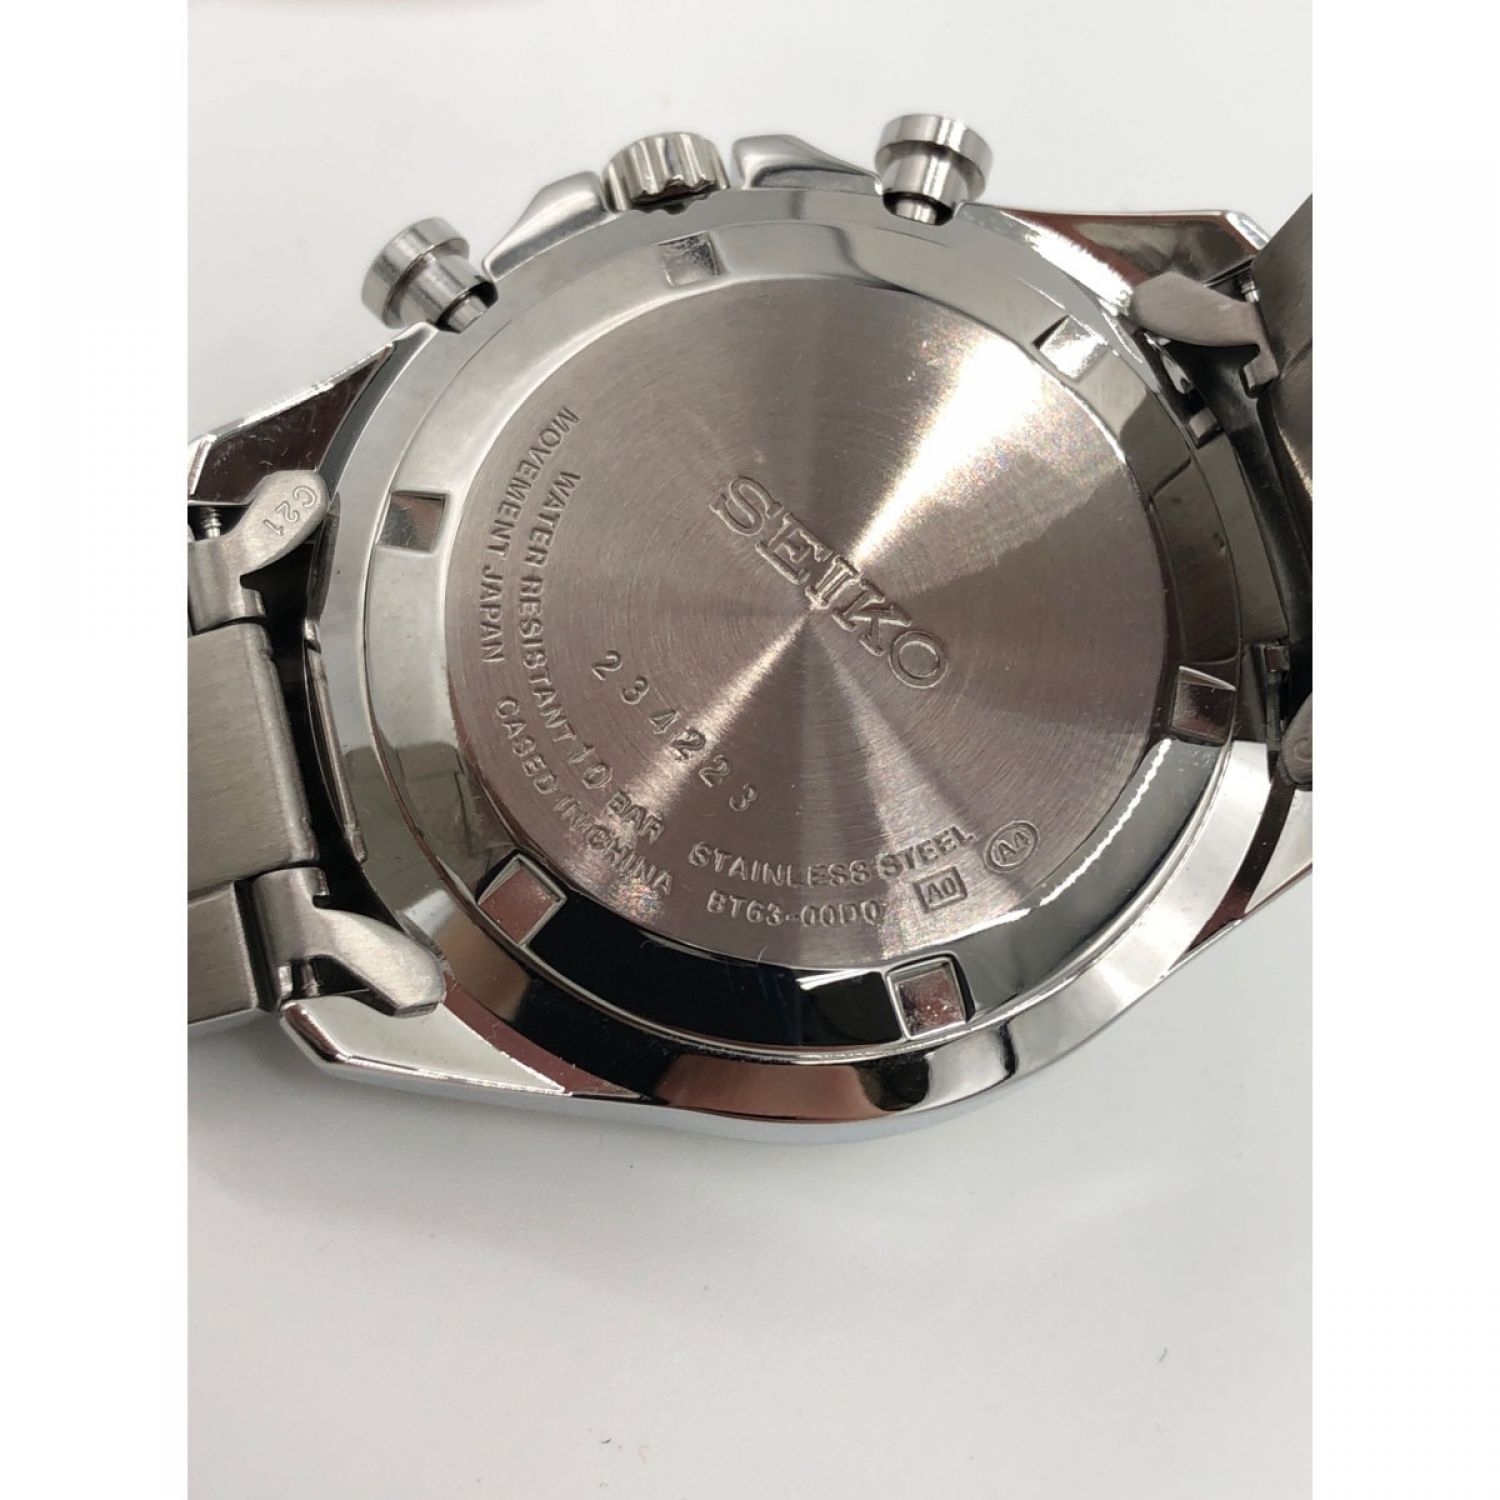 中古】 SEIKO セイコー メンズ 腕時計 BT63-00D0 シルバー Bランク